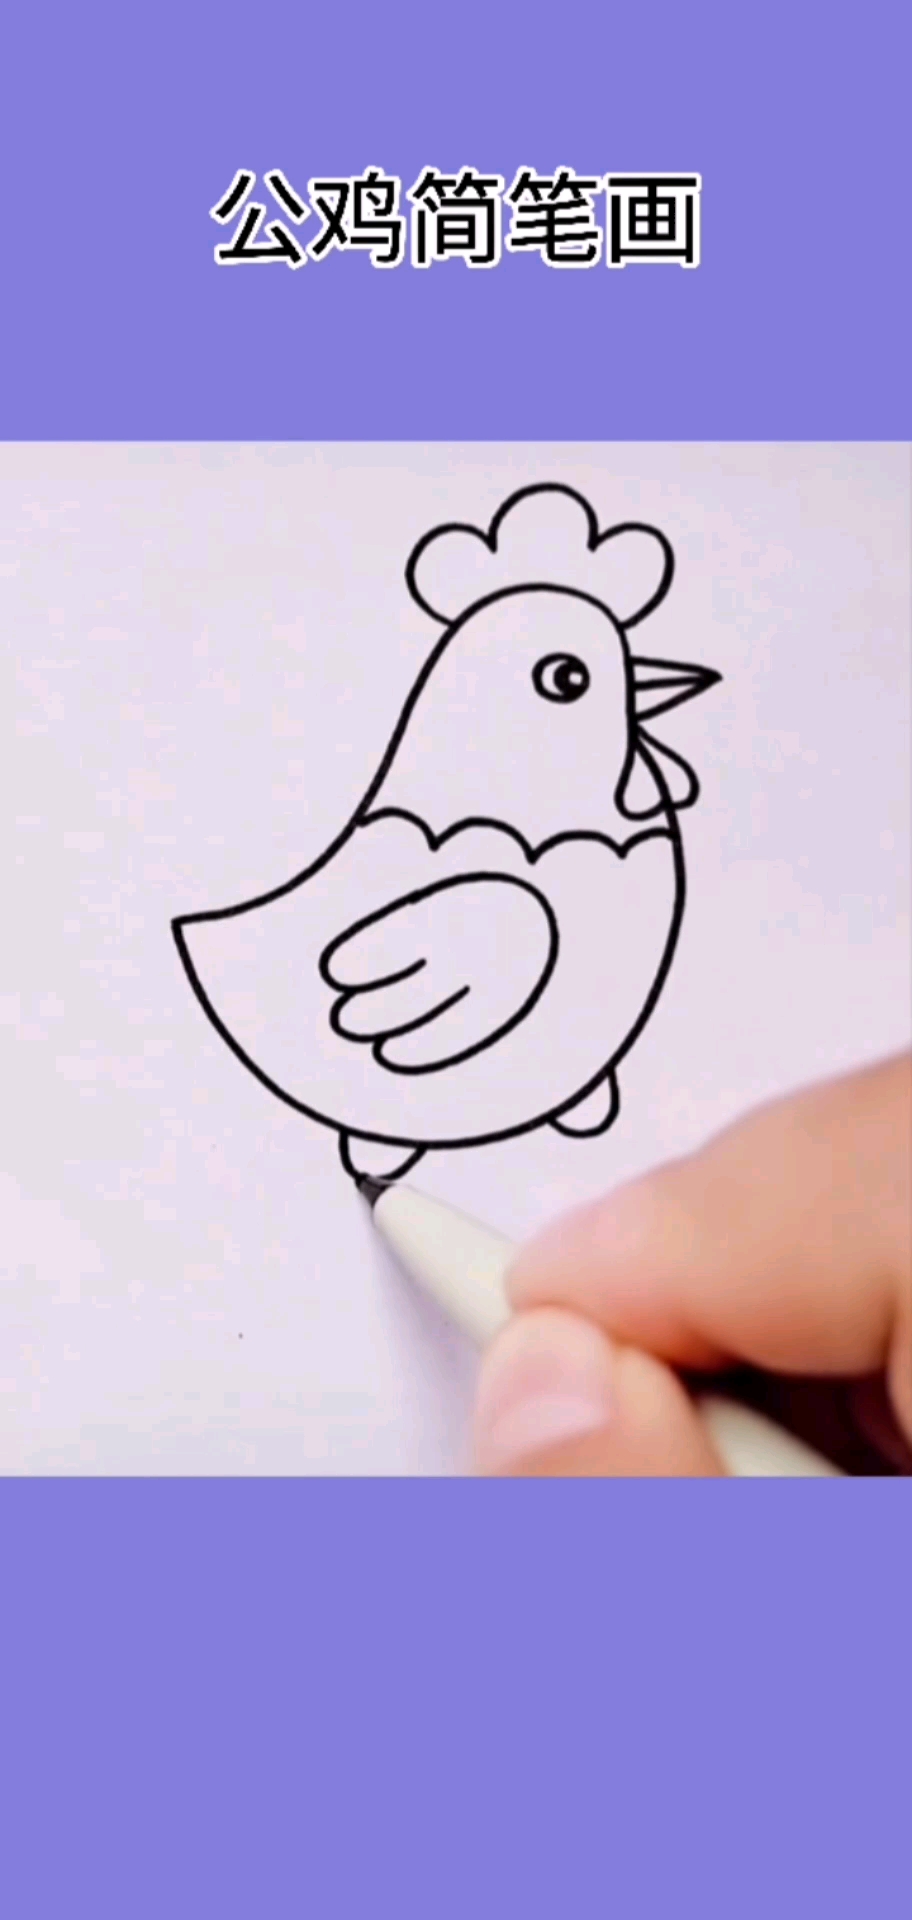 大公鸡简笔画 卡通图片